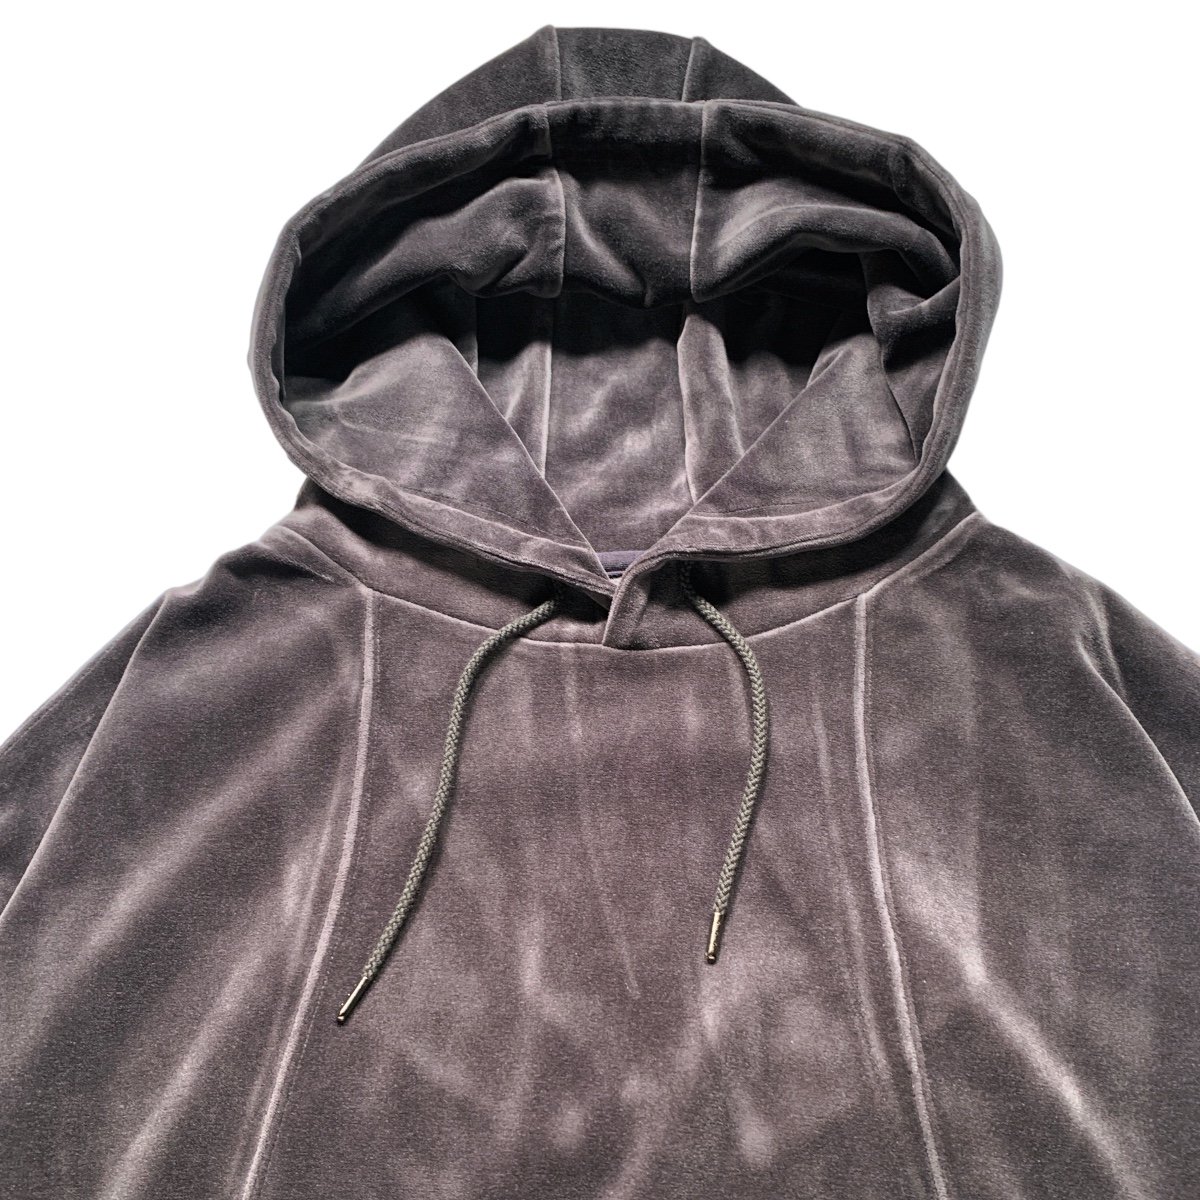 7,400円tightbooth velour hoodie CHARCOAL